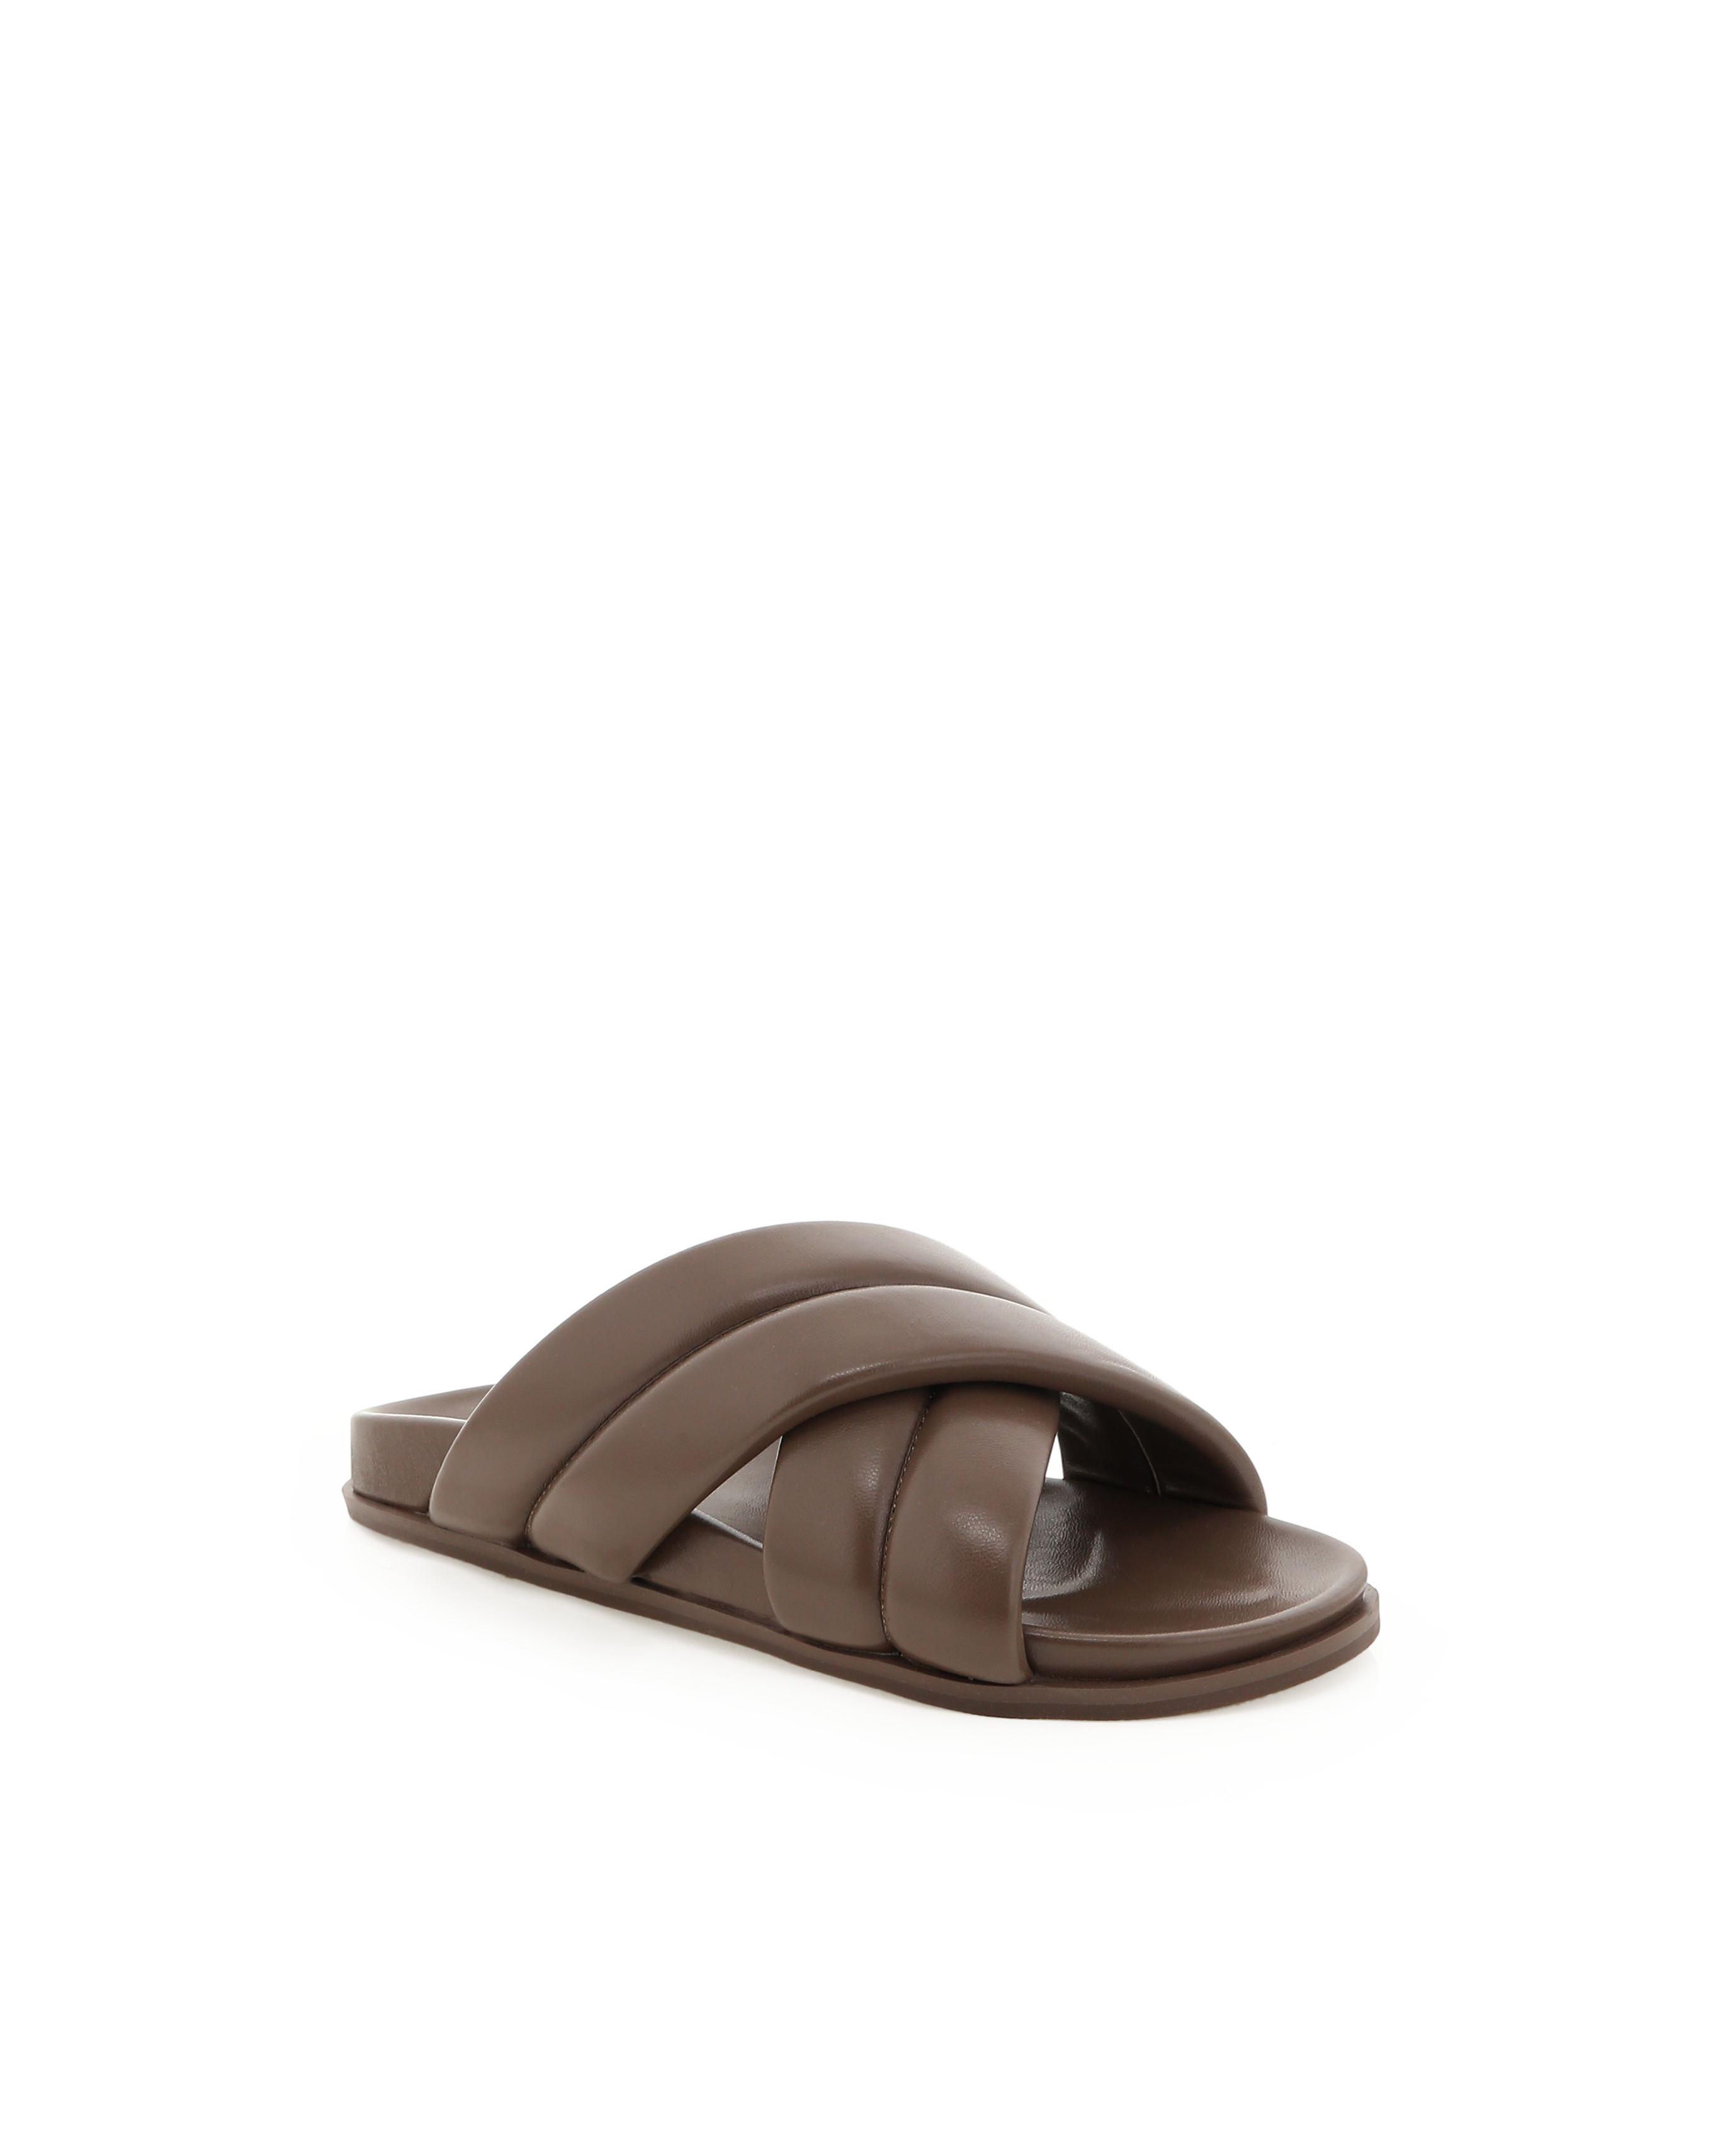 Fenmore Sandals - Mocha